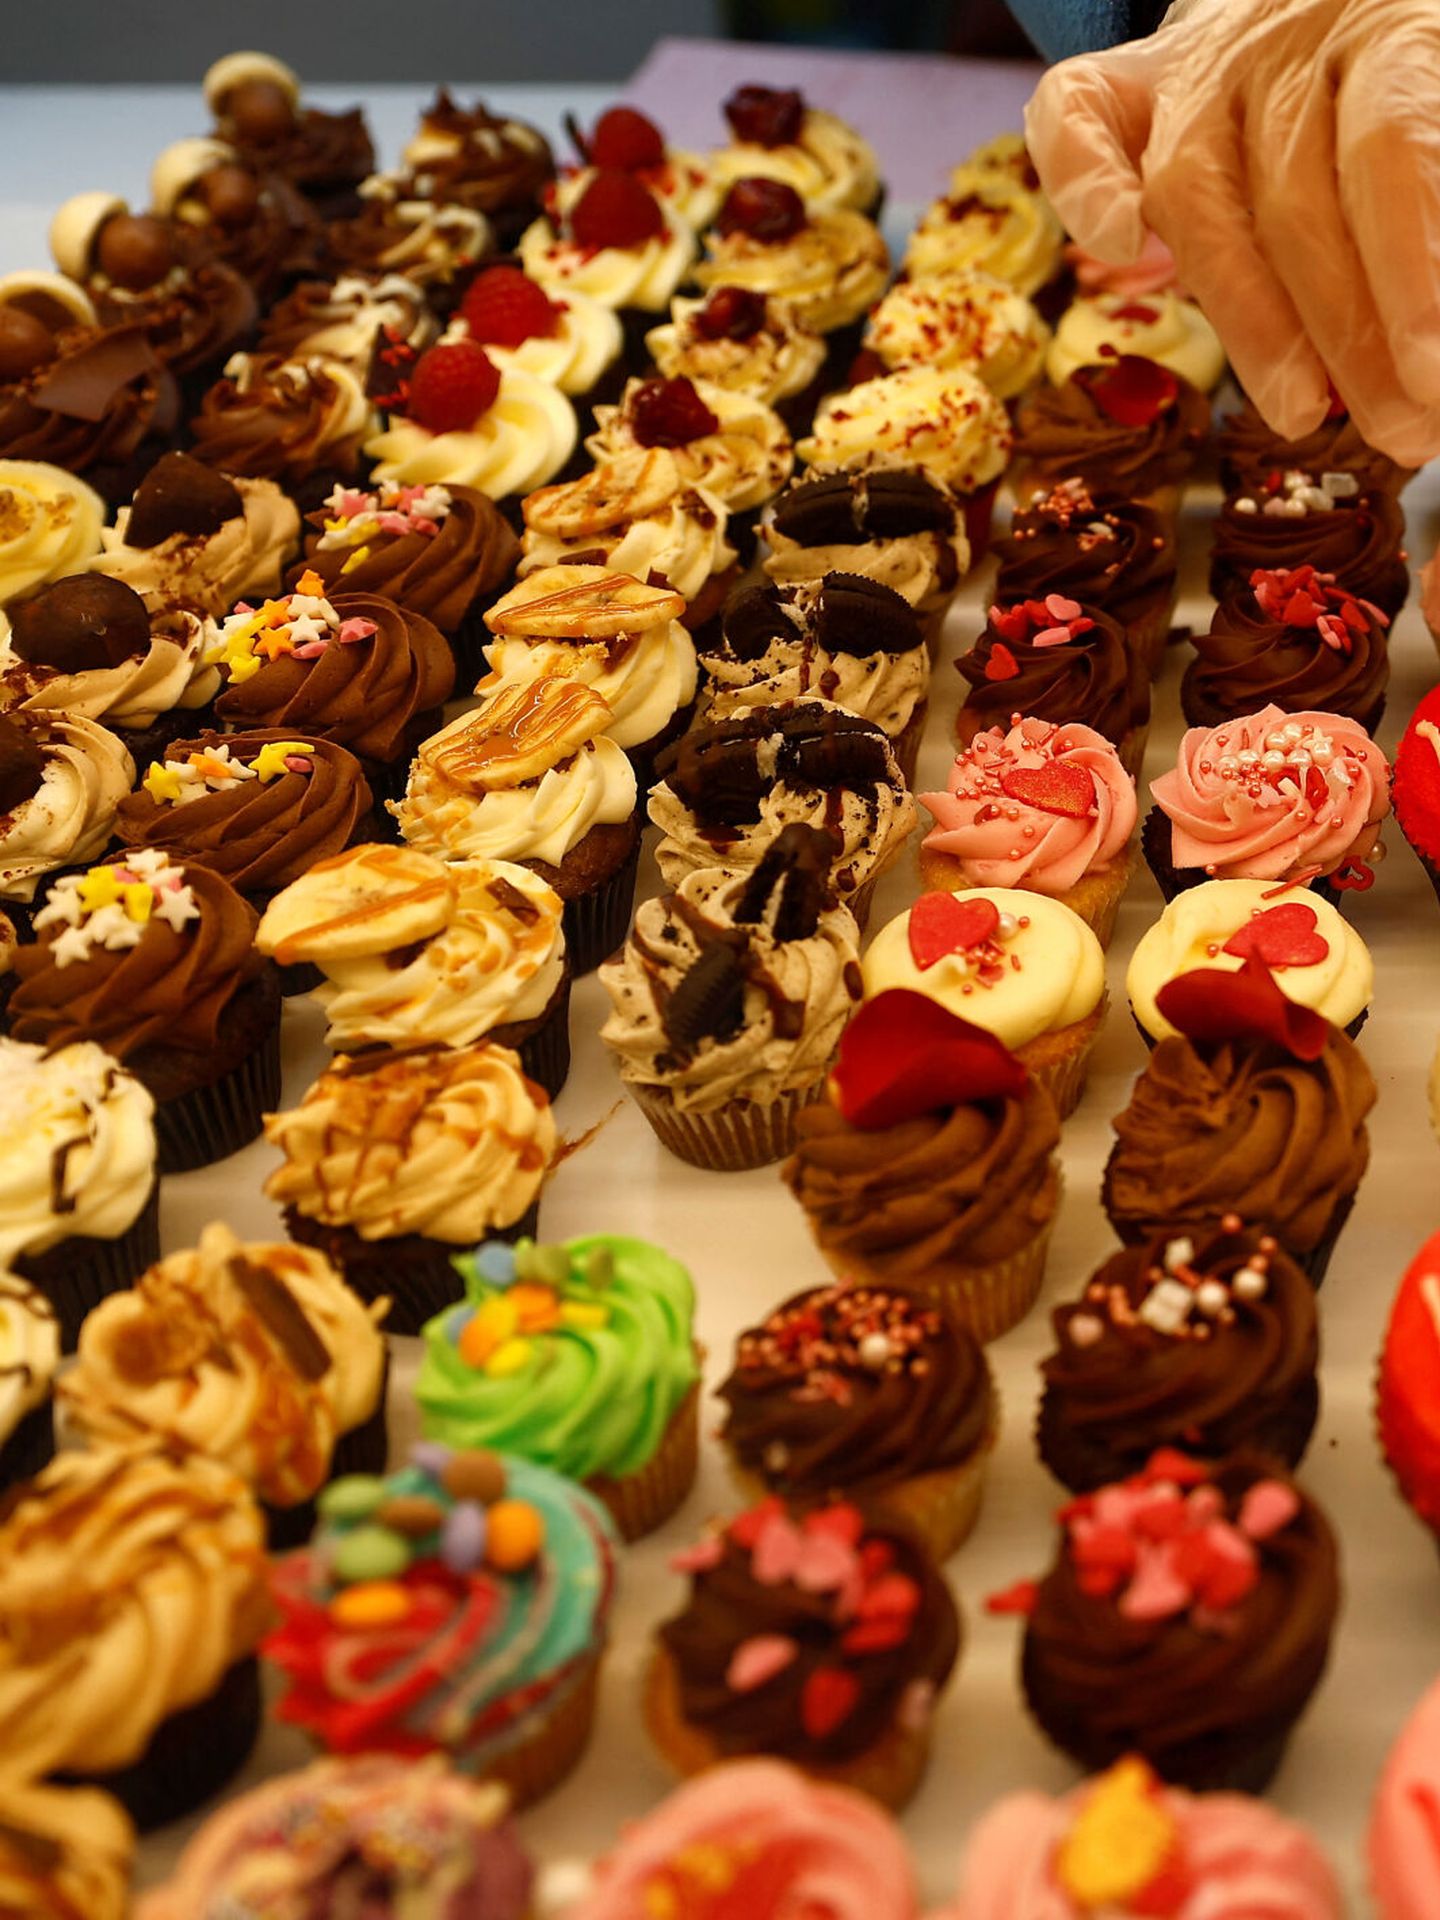 Diversos pasteles y tartaletas en una pastelería de Estados Unidos. (Reuters)